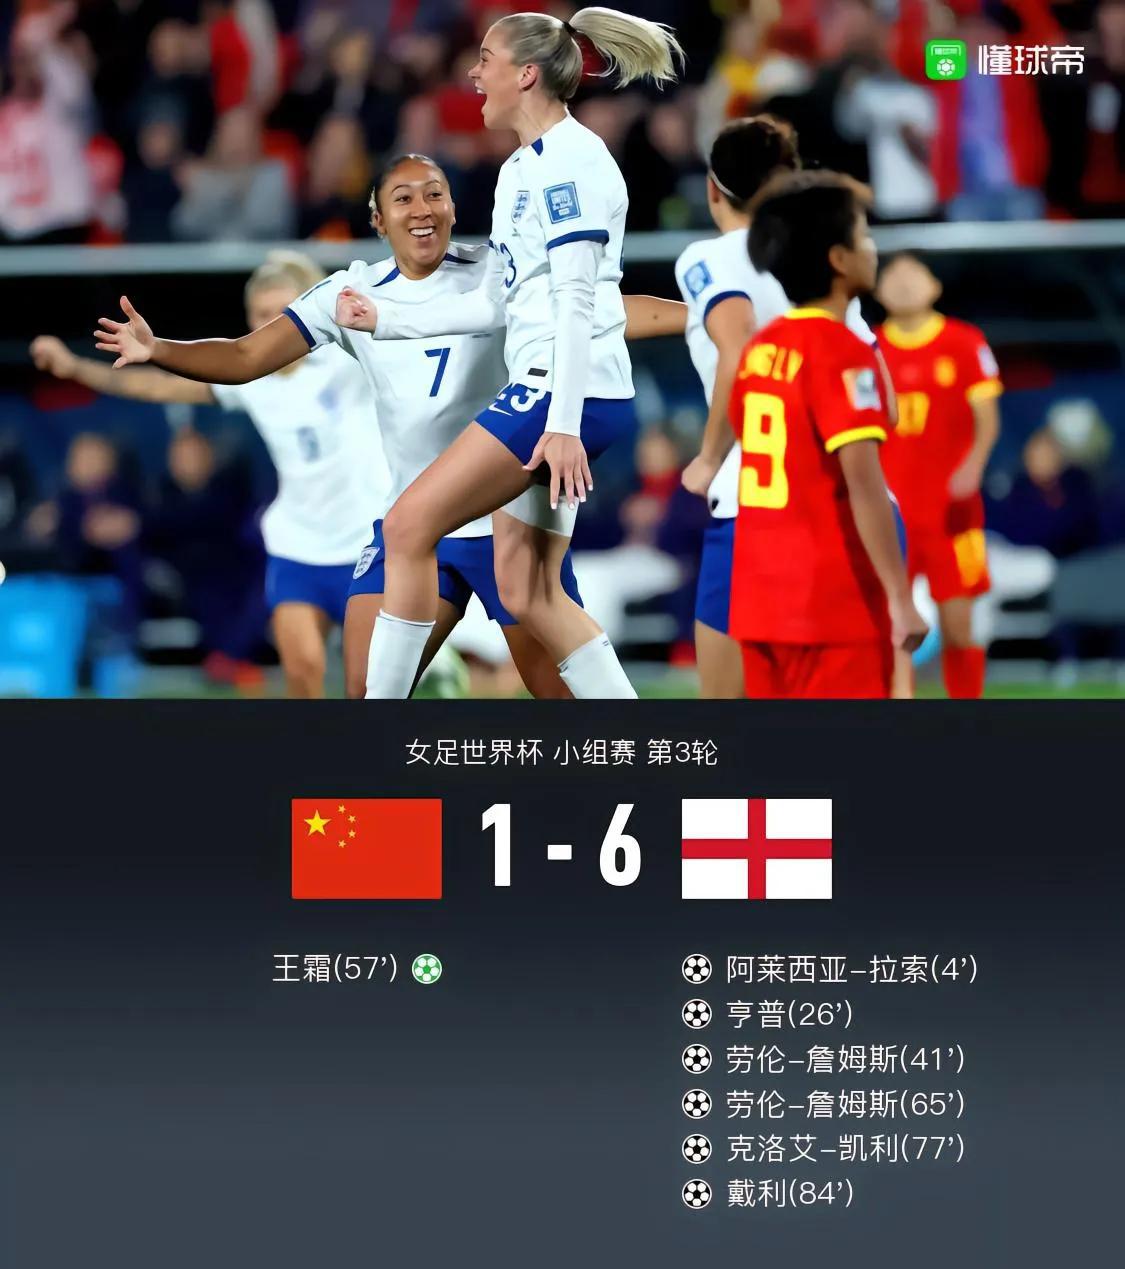 “1-6惨败，让中国足球找到了正确方向！”
一是风格上，亚洲球队只有走一条路，就(1)